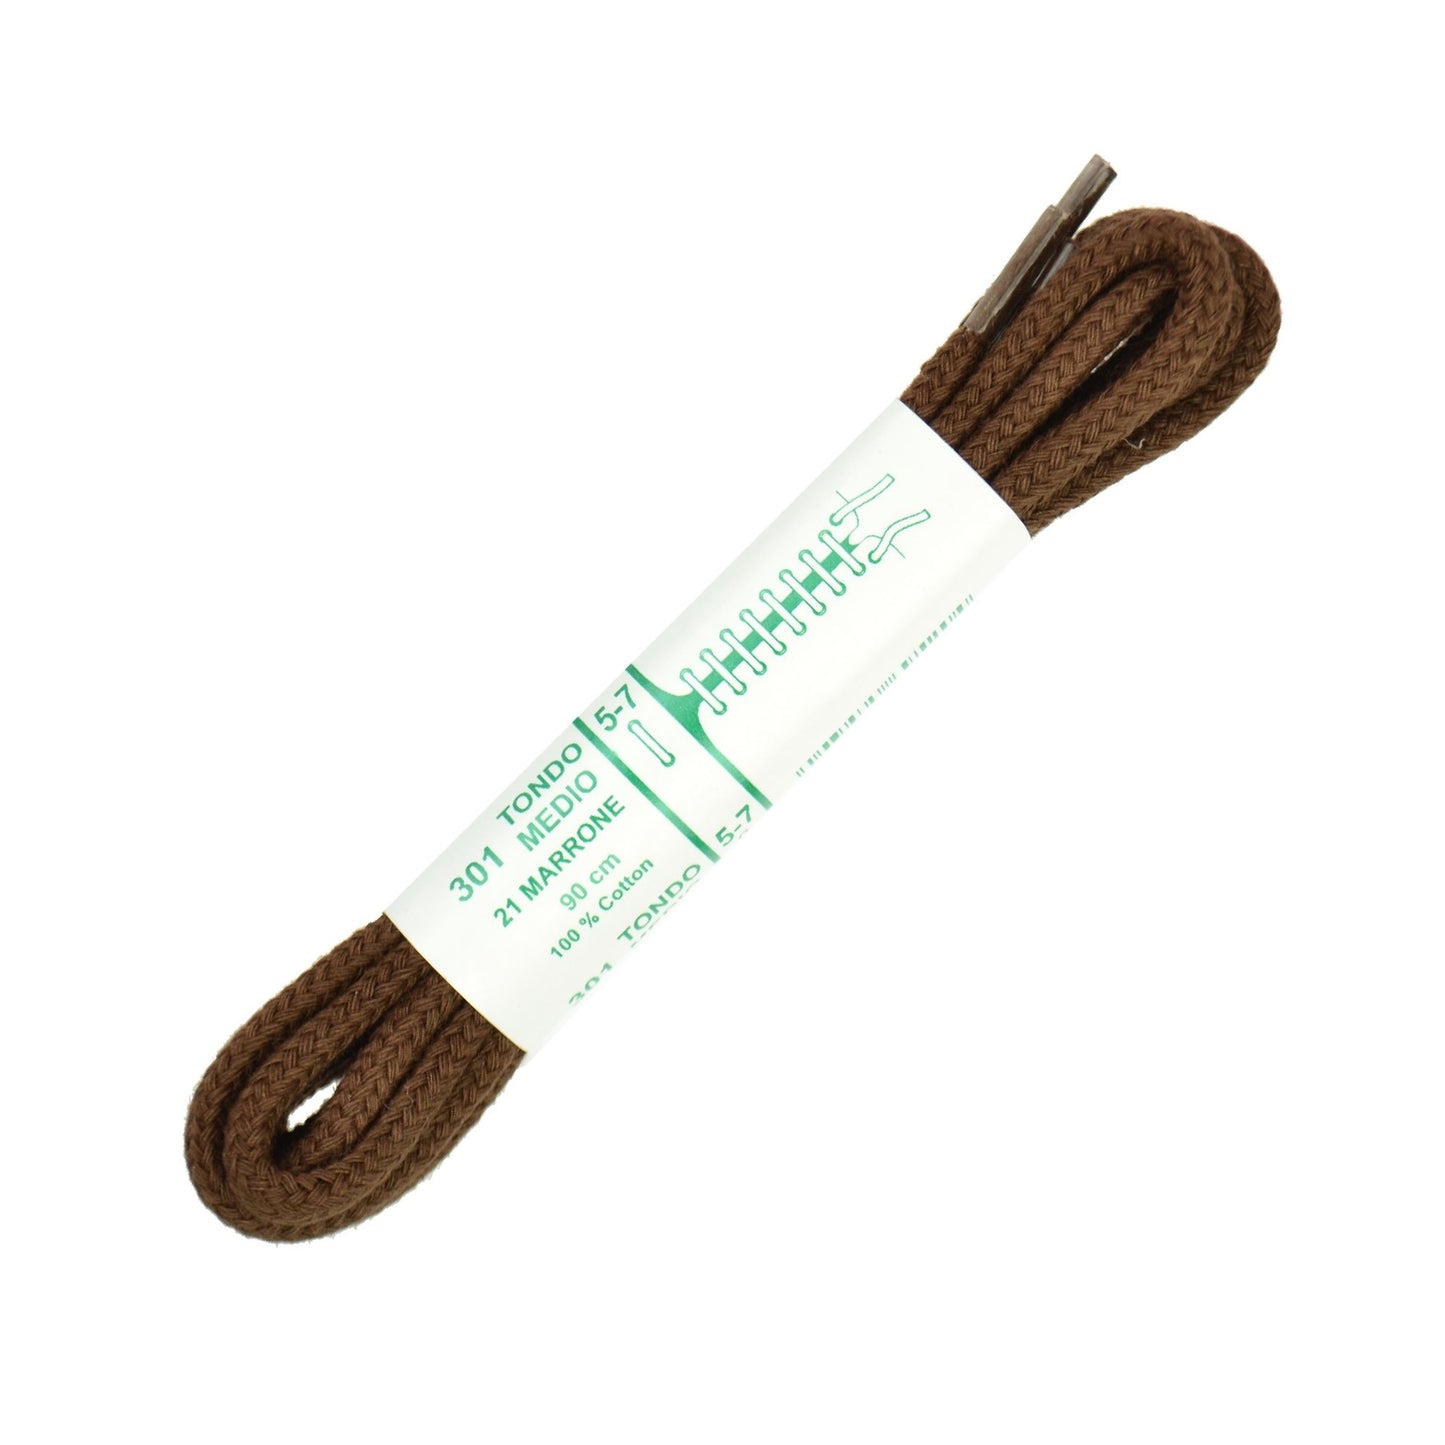 90cm Premium Cord Shoe Laces - Brown 4mm